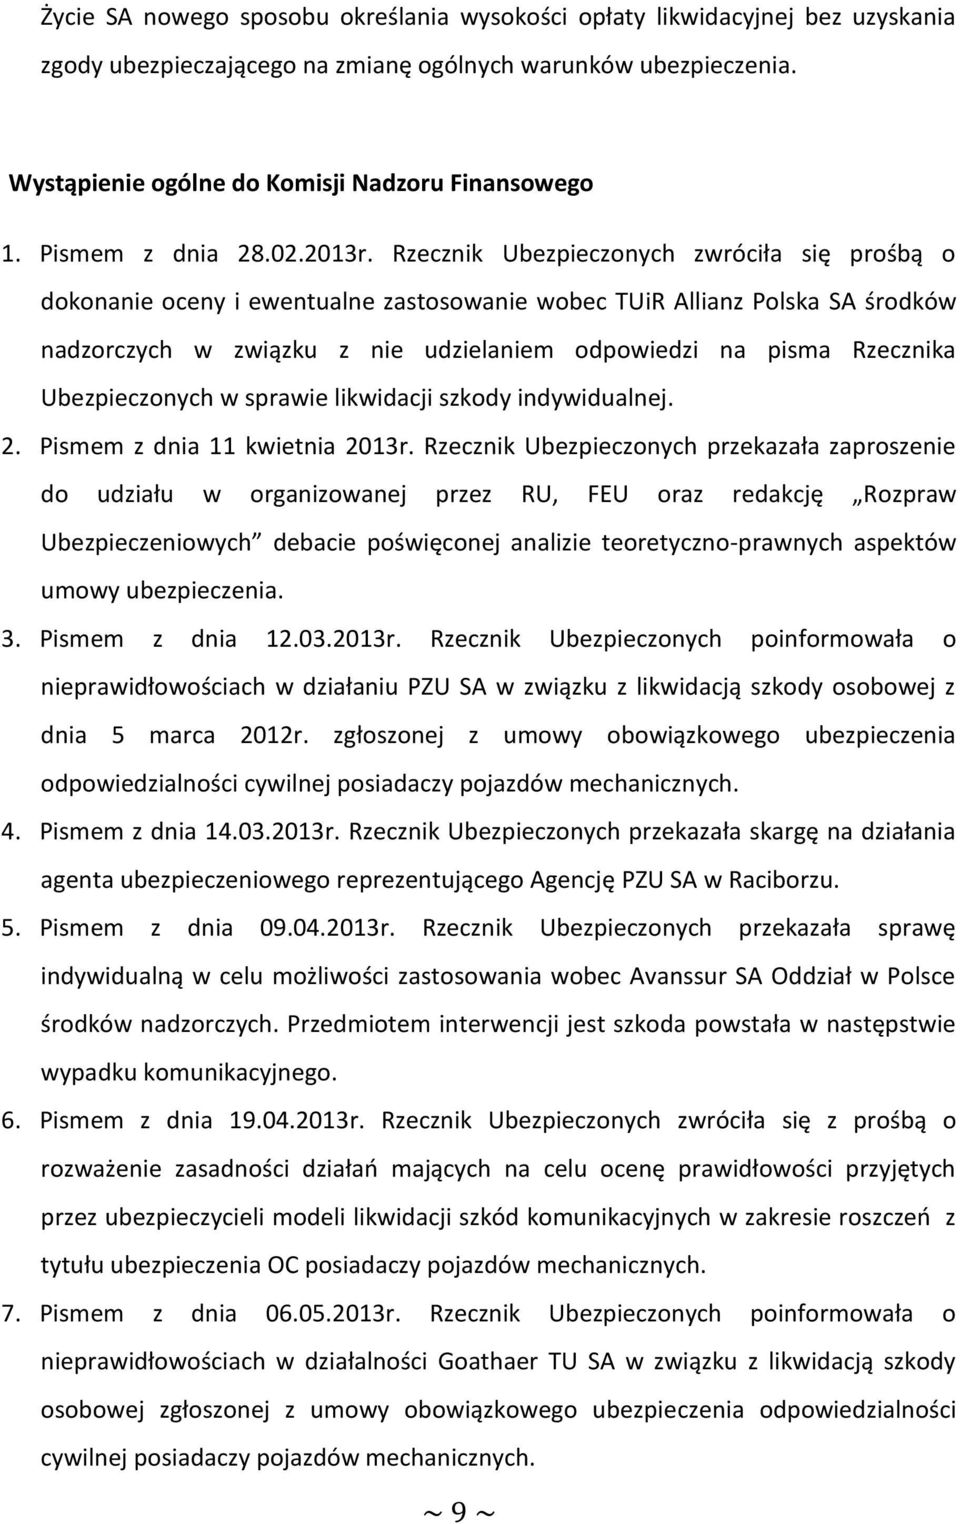 Rzecznik Ubezpieczonych zwróciła się prośbą o dokonanie oceny i ewentualne zastosowanie wobec TUiR Allianz Polska SA środków nadzorczych w związku z nie udzielaniem odpowiedzi na pisma Rzecznika